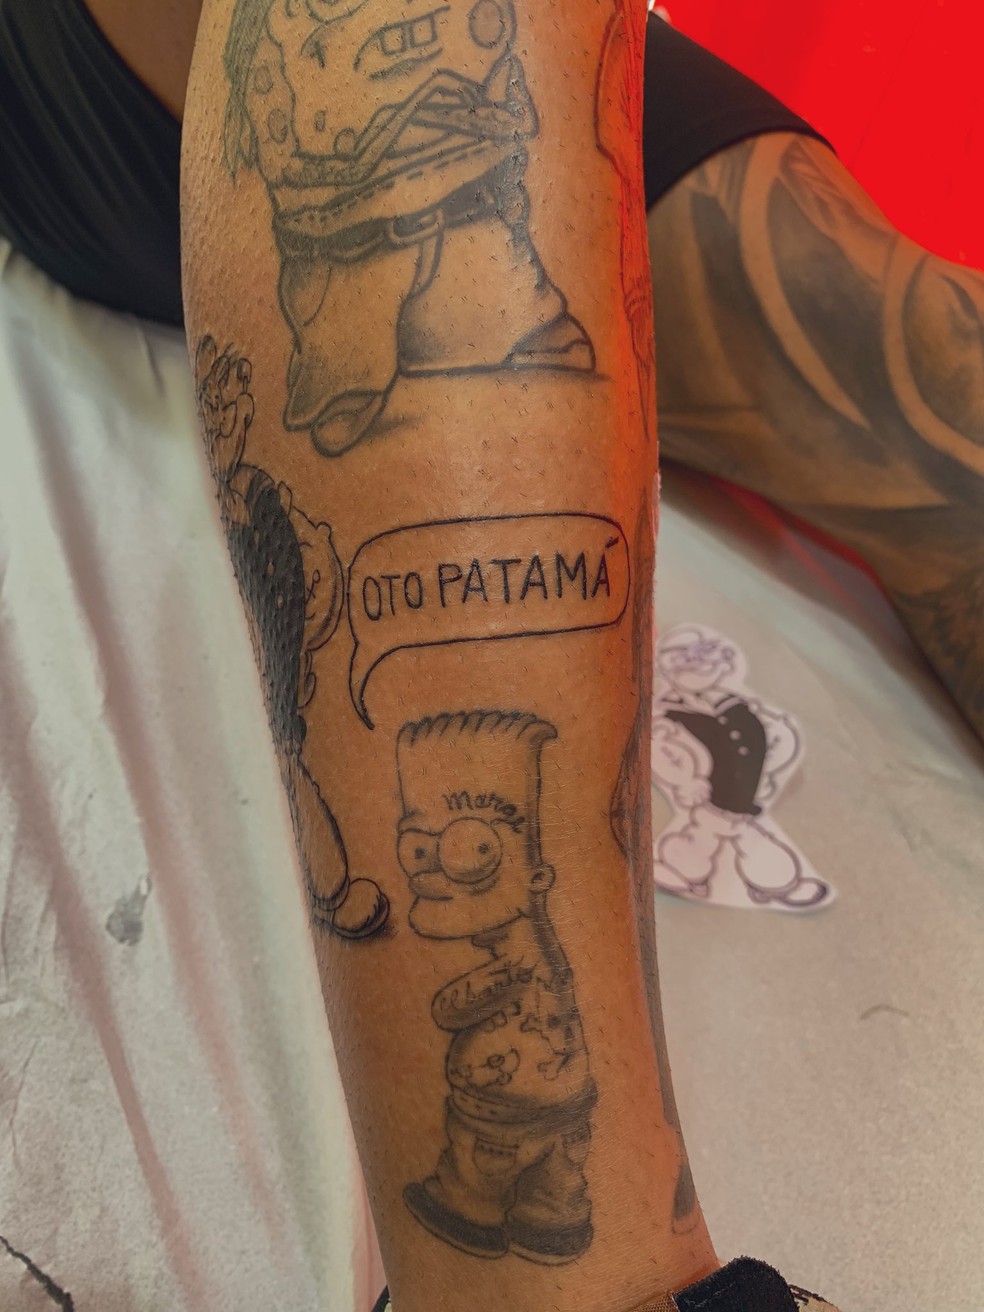 Camisa 9 do Flamengo em 2019 tatua "Oto Patamá" na perna direita — Foto: Reprodução/Twitter